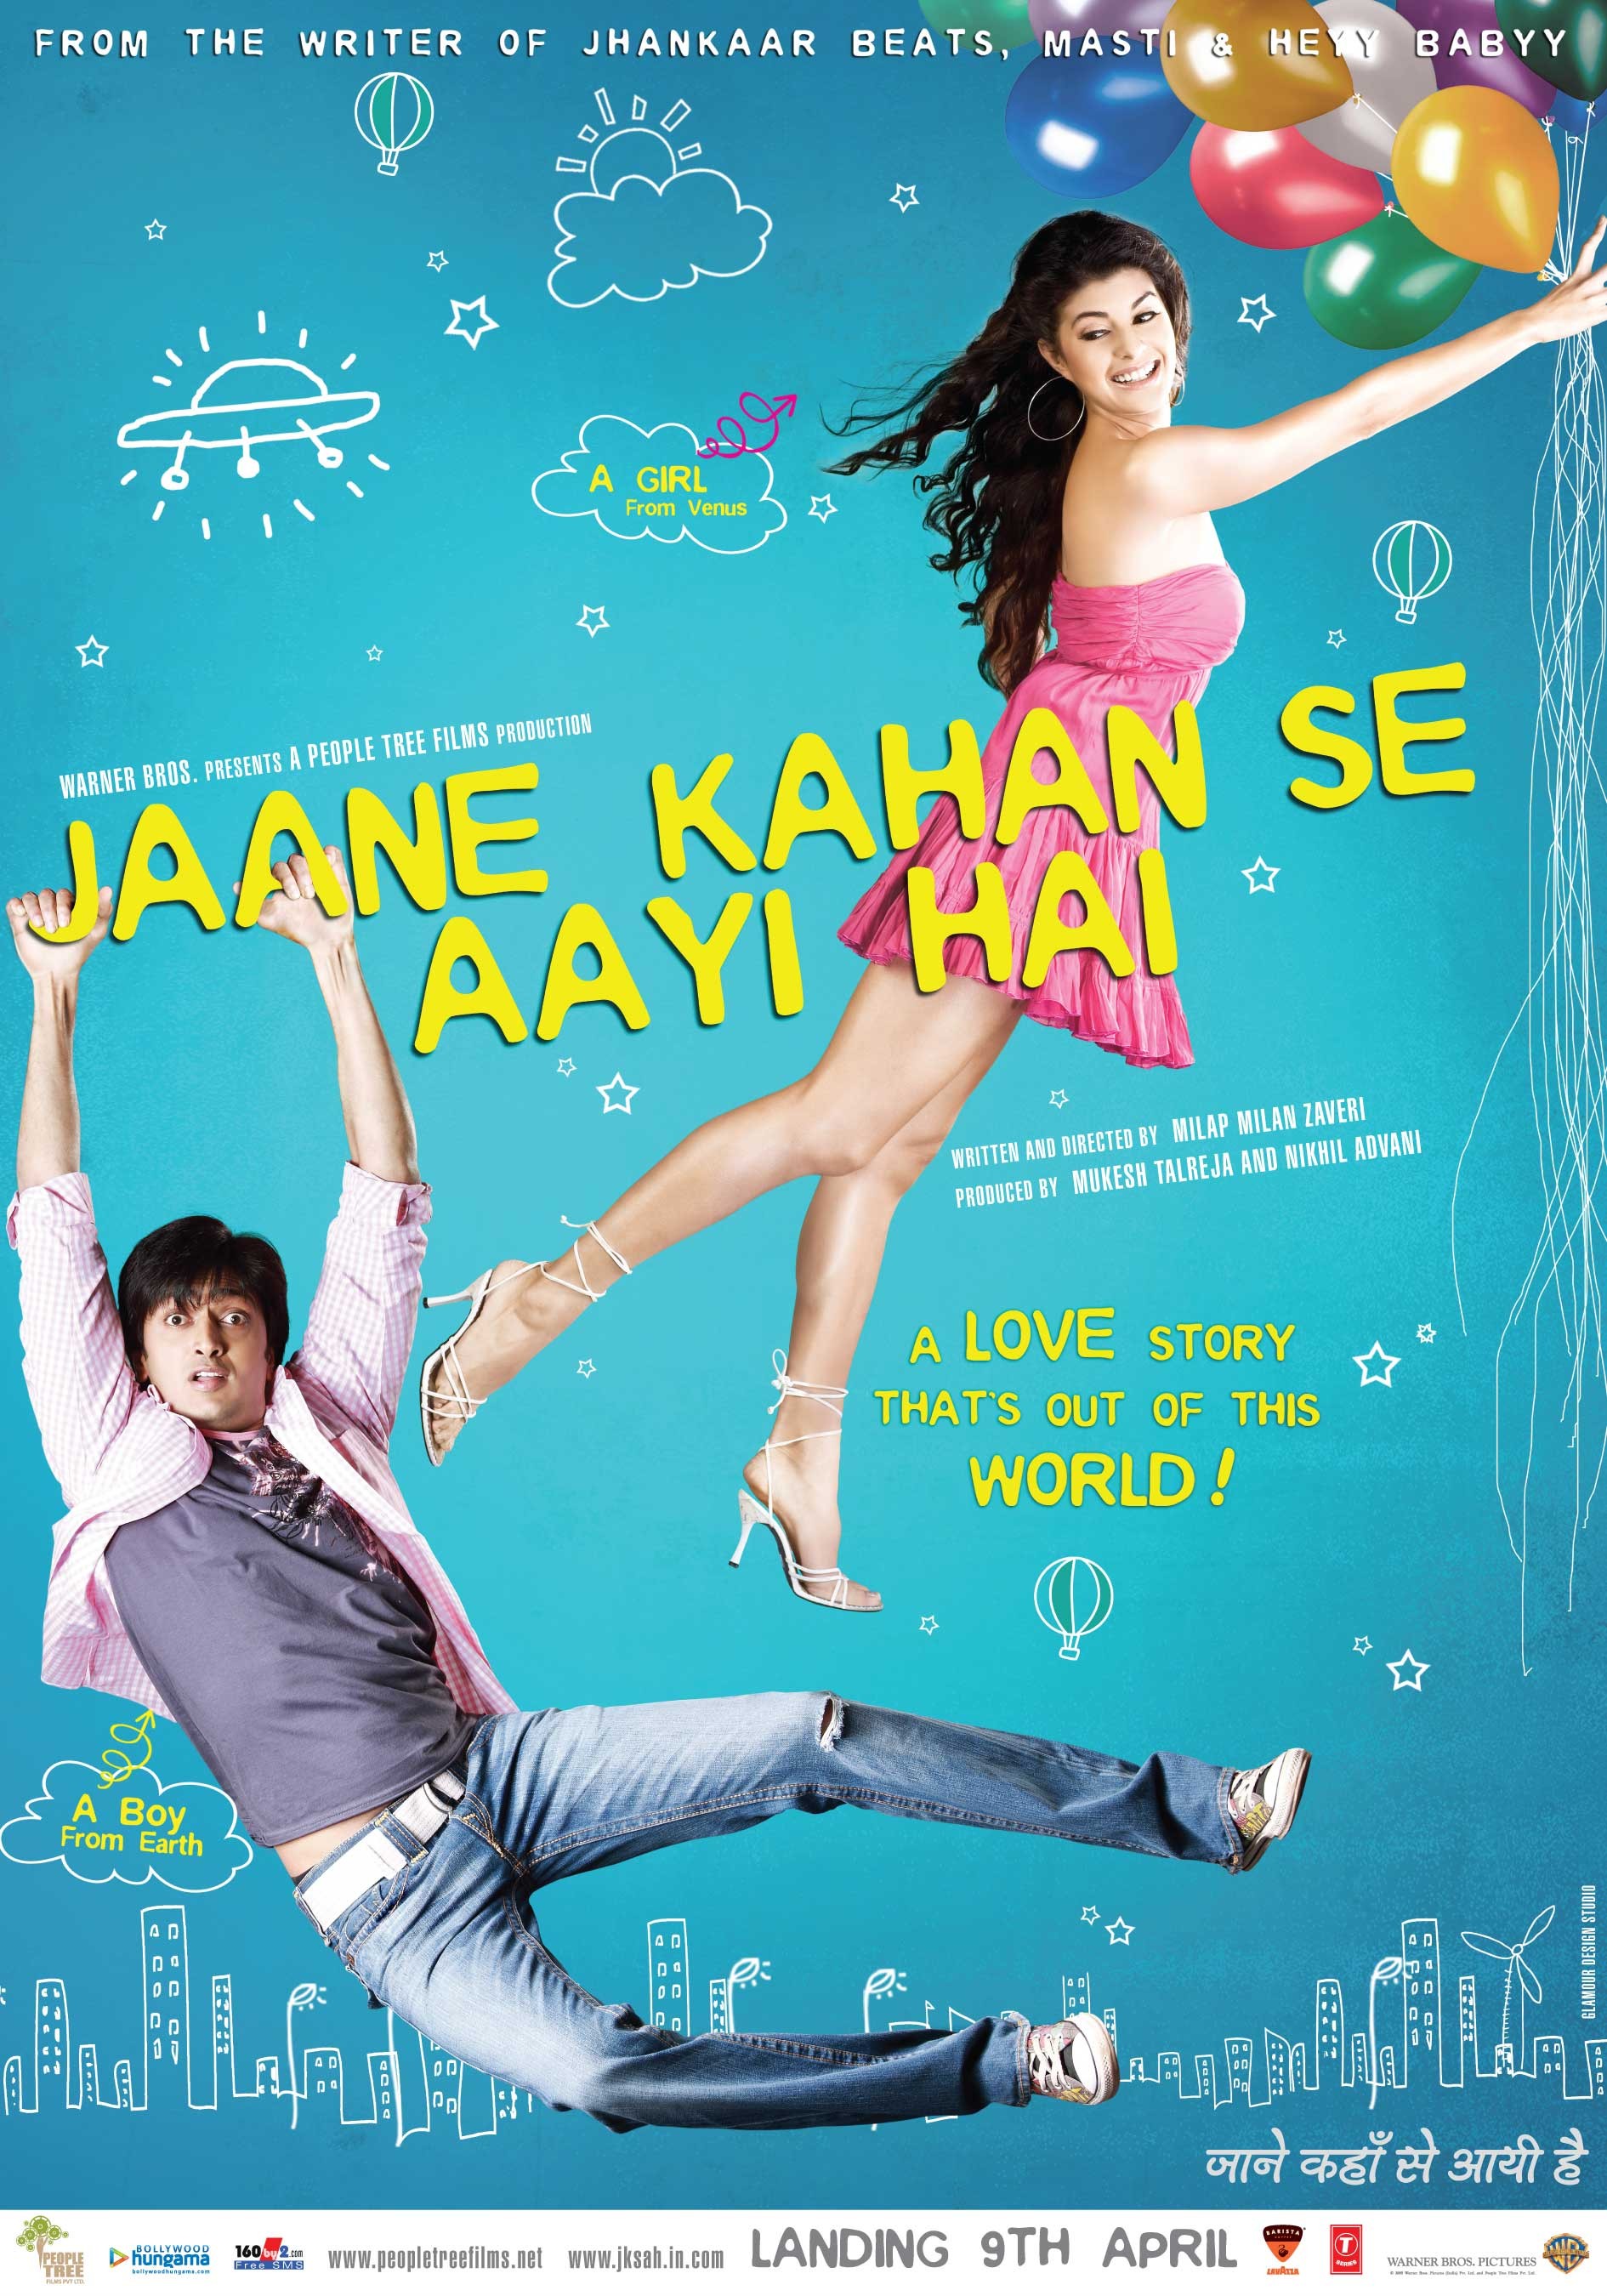 Mega Sized Movie Poster Image for Jaane Kahan Se Aayi Hai (#3 of 5)